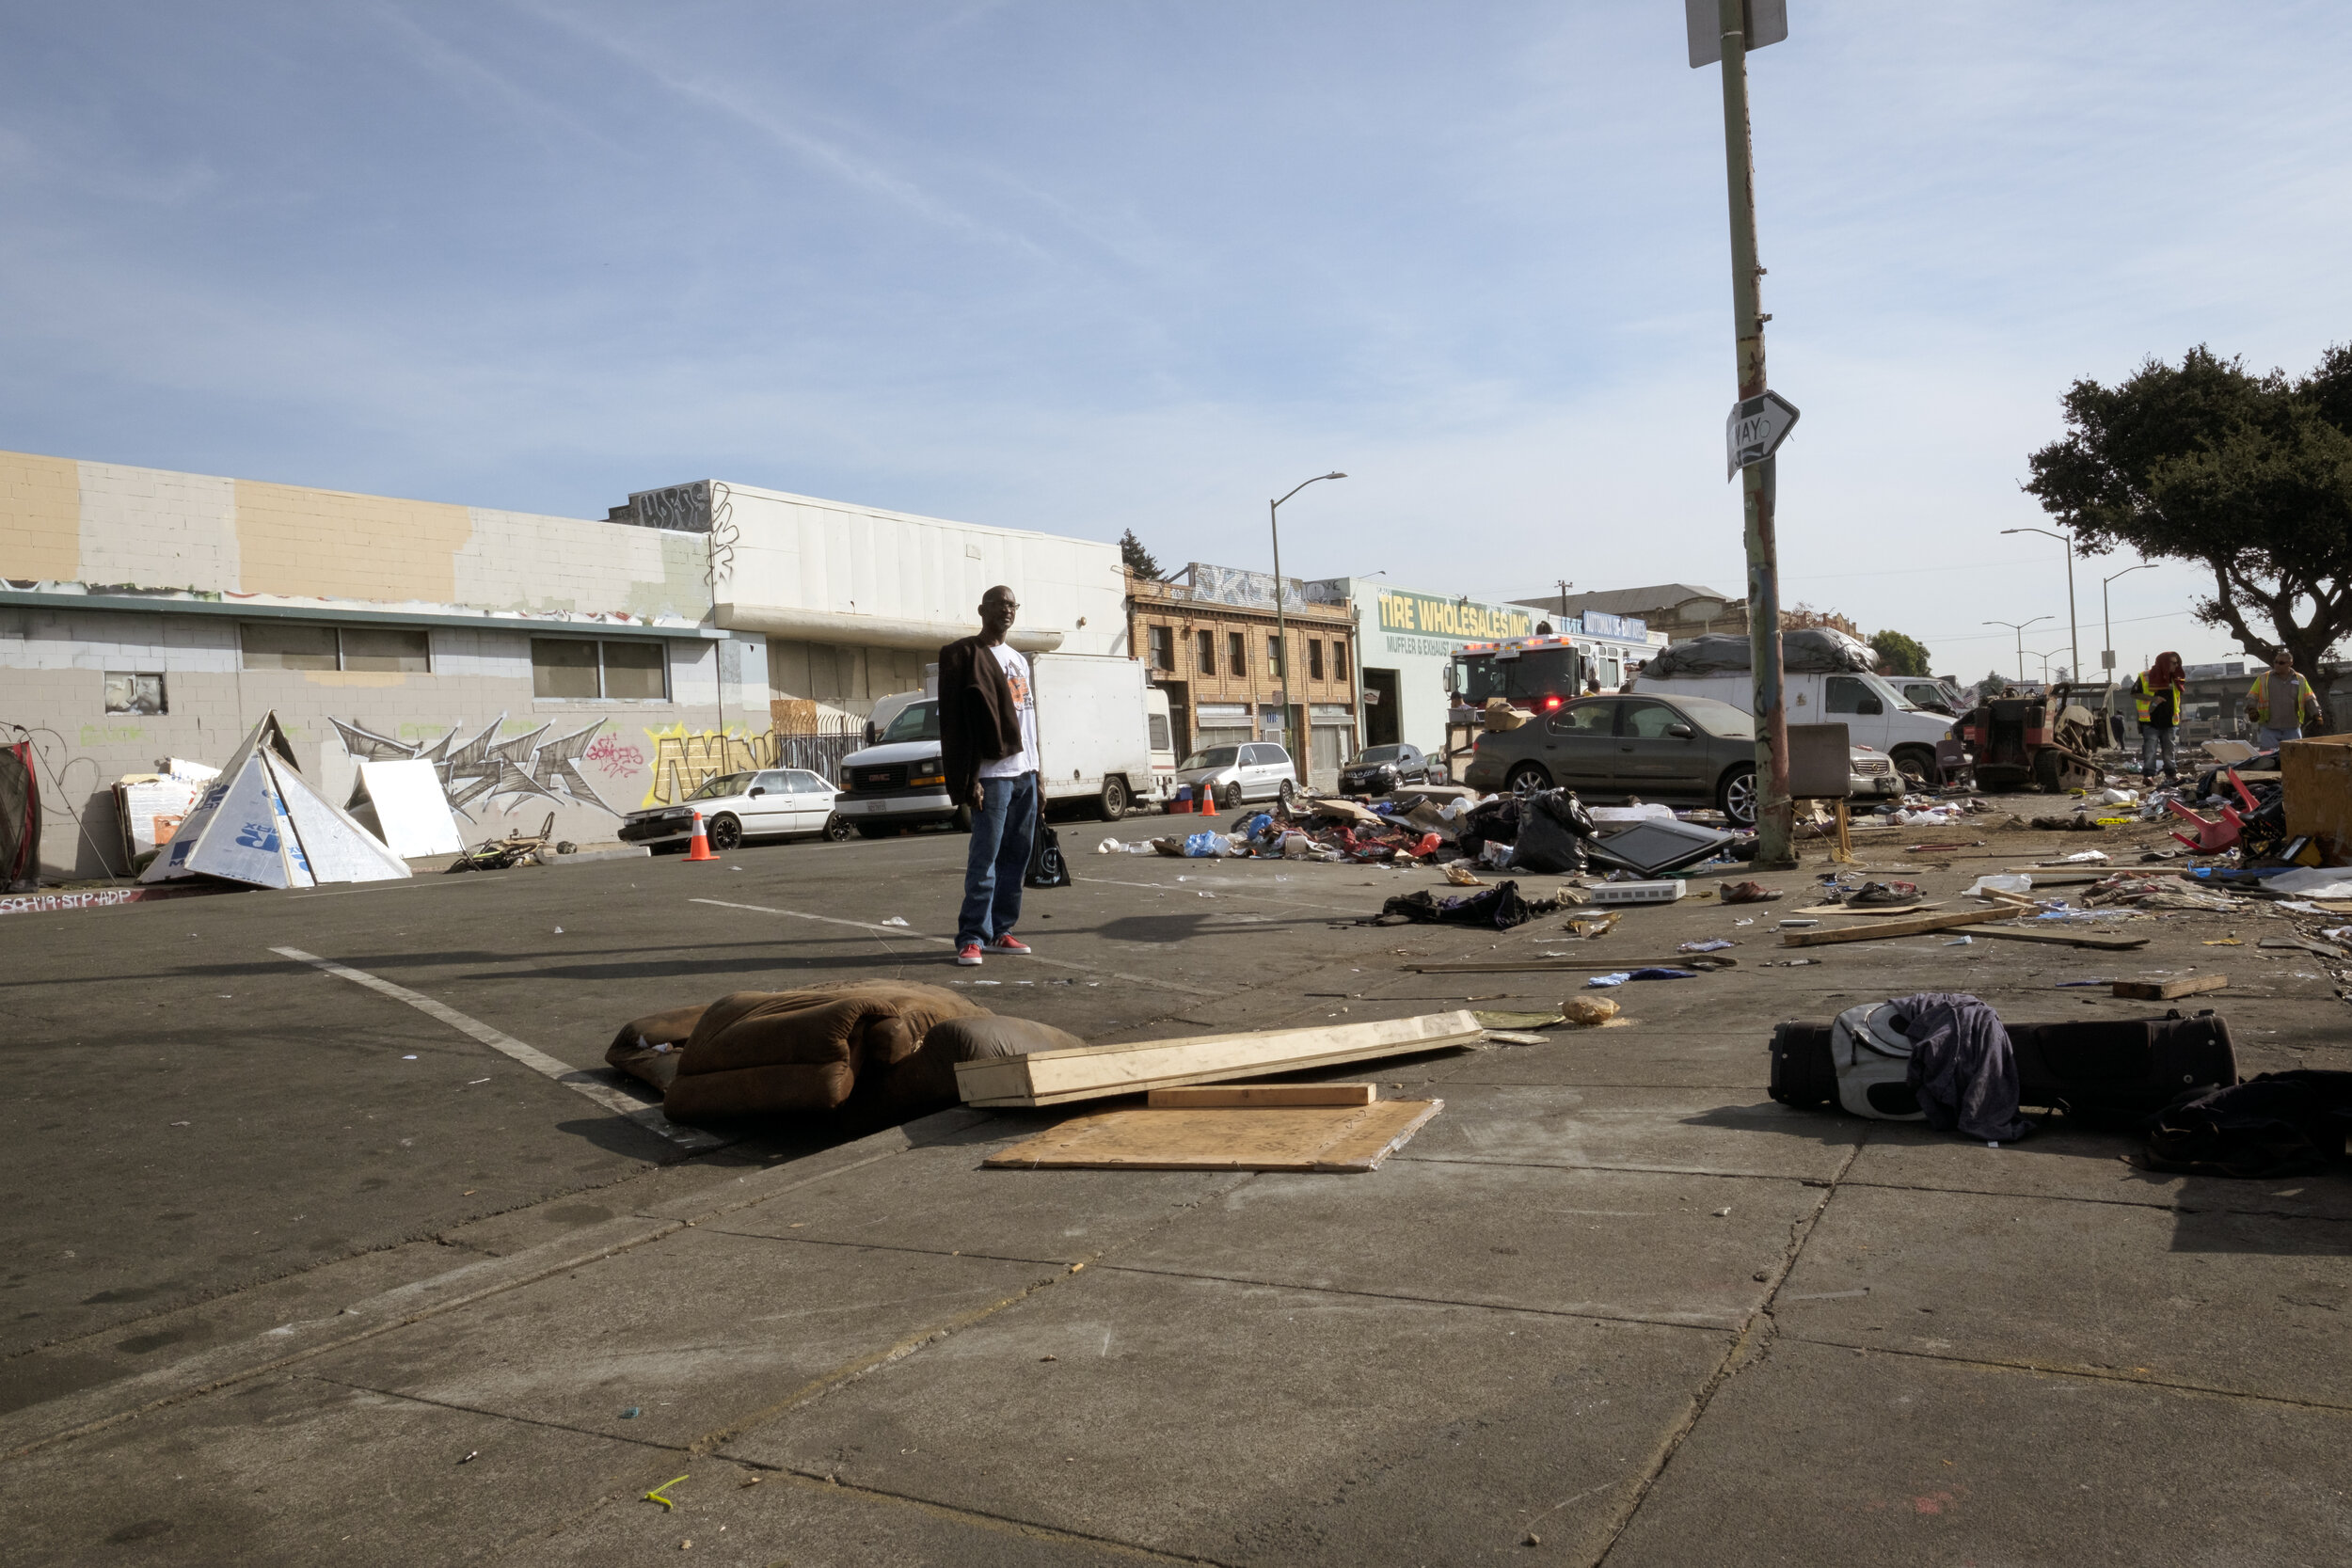 Stapp_Oakland_Homeless_Eviction_18.jpg